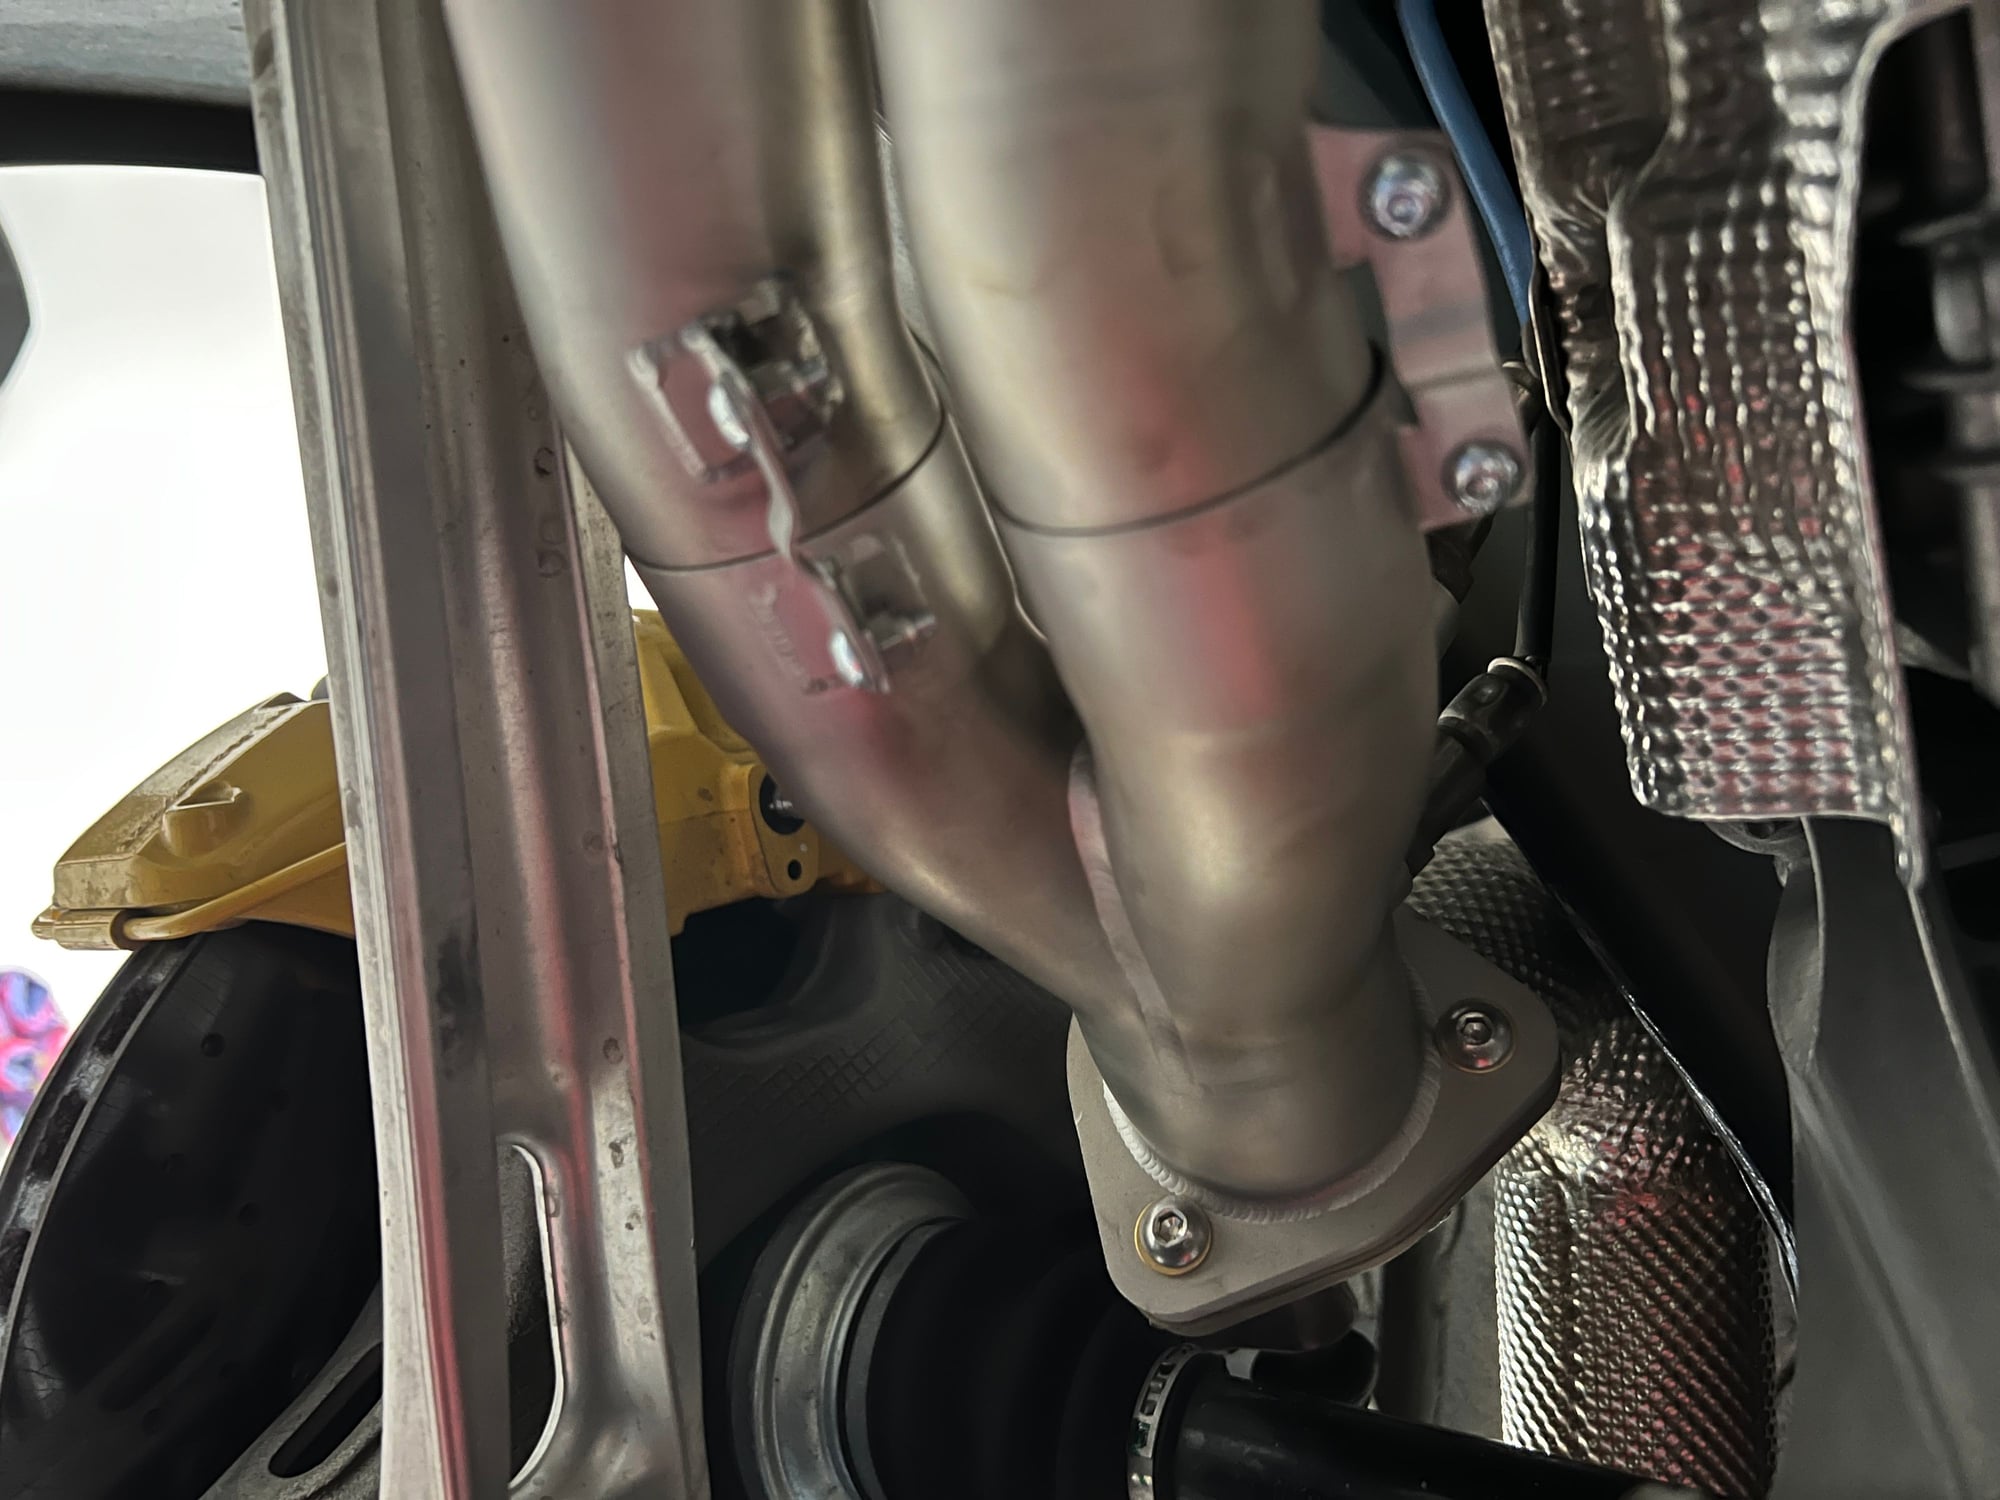 Engine - Exhaust - JCR 718 Inconel race Manifolds GT4 Spyder GTS 4.0 - Used - 2020 to 2022 Porsche 718 Cayman - 2020 to 2022 Porsche 718 Spyder - 2020 to 2022 Porsche 718 - Dakota Dunes, SD 57049, United States